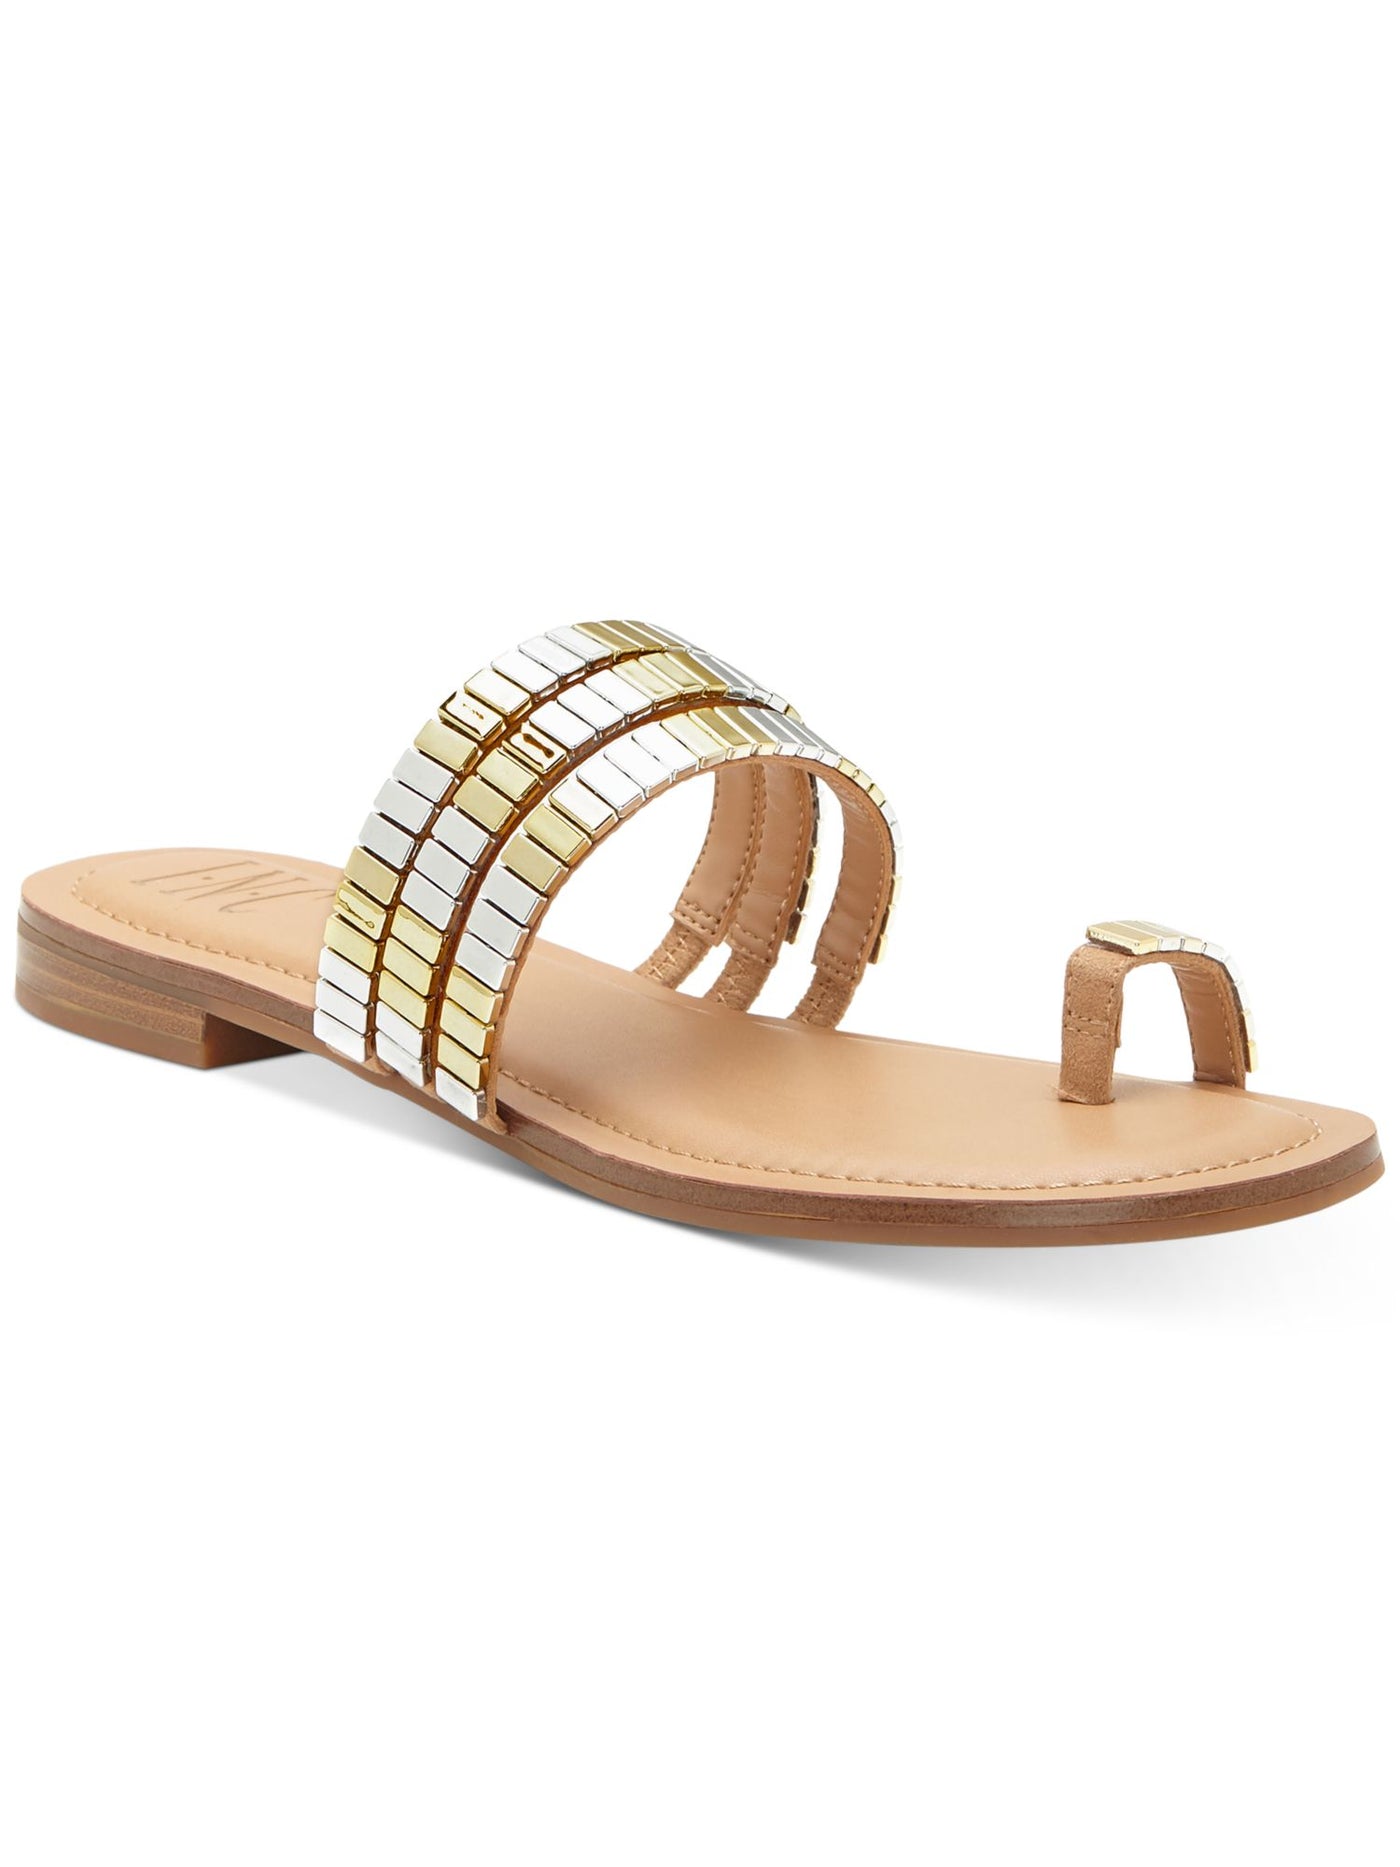 INC Womens Brown Strappy Toe-Loop Embellished Padded Jaylee Round Toe Block Heel Slip On Slide Sandals Shoes 7 M